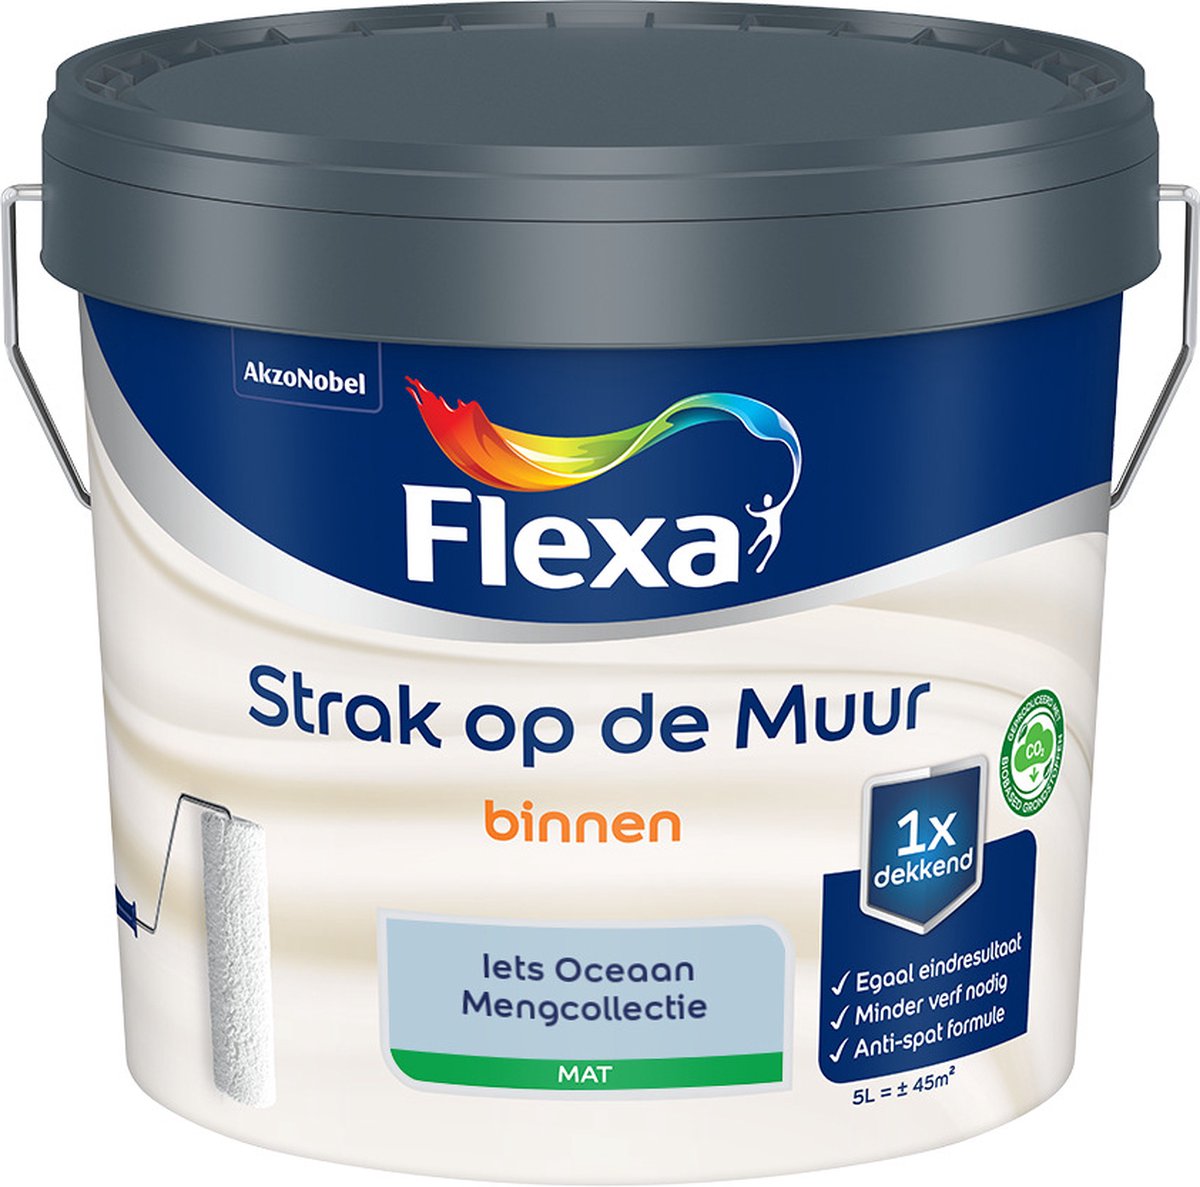 Flexa Strak op de muur - Muurverf - Mengcollectie - Iets Oceaan - 5 Liter